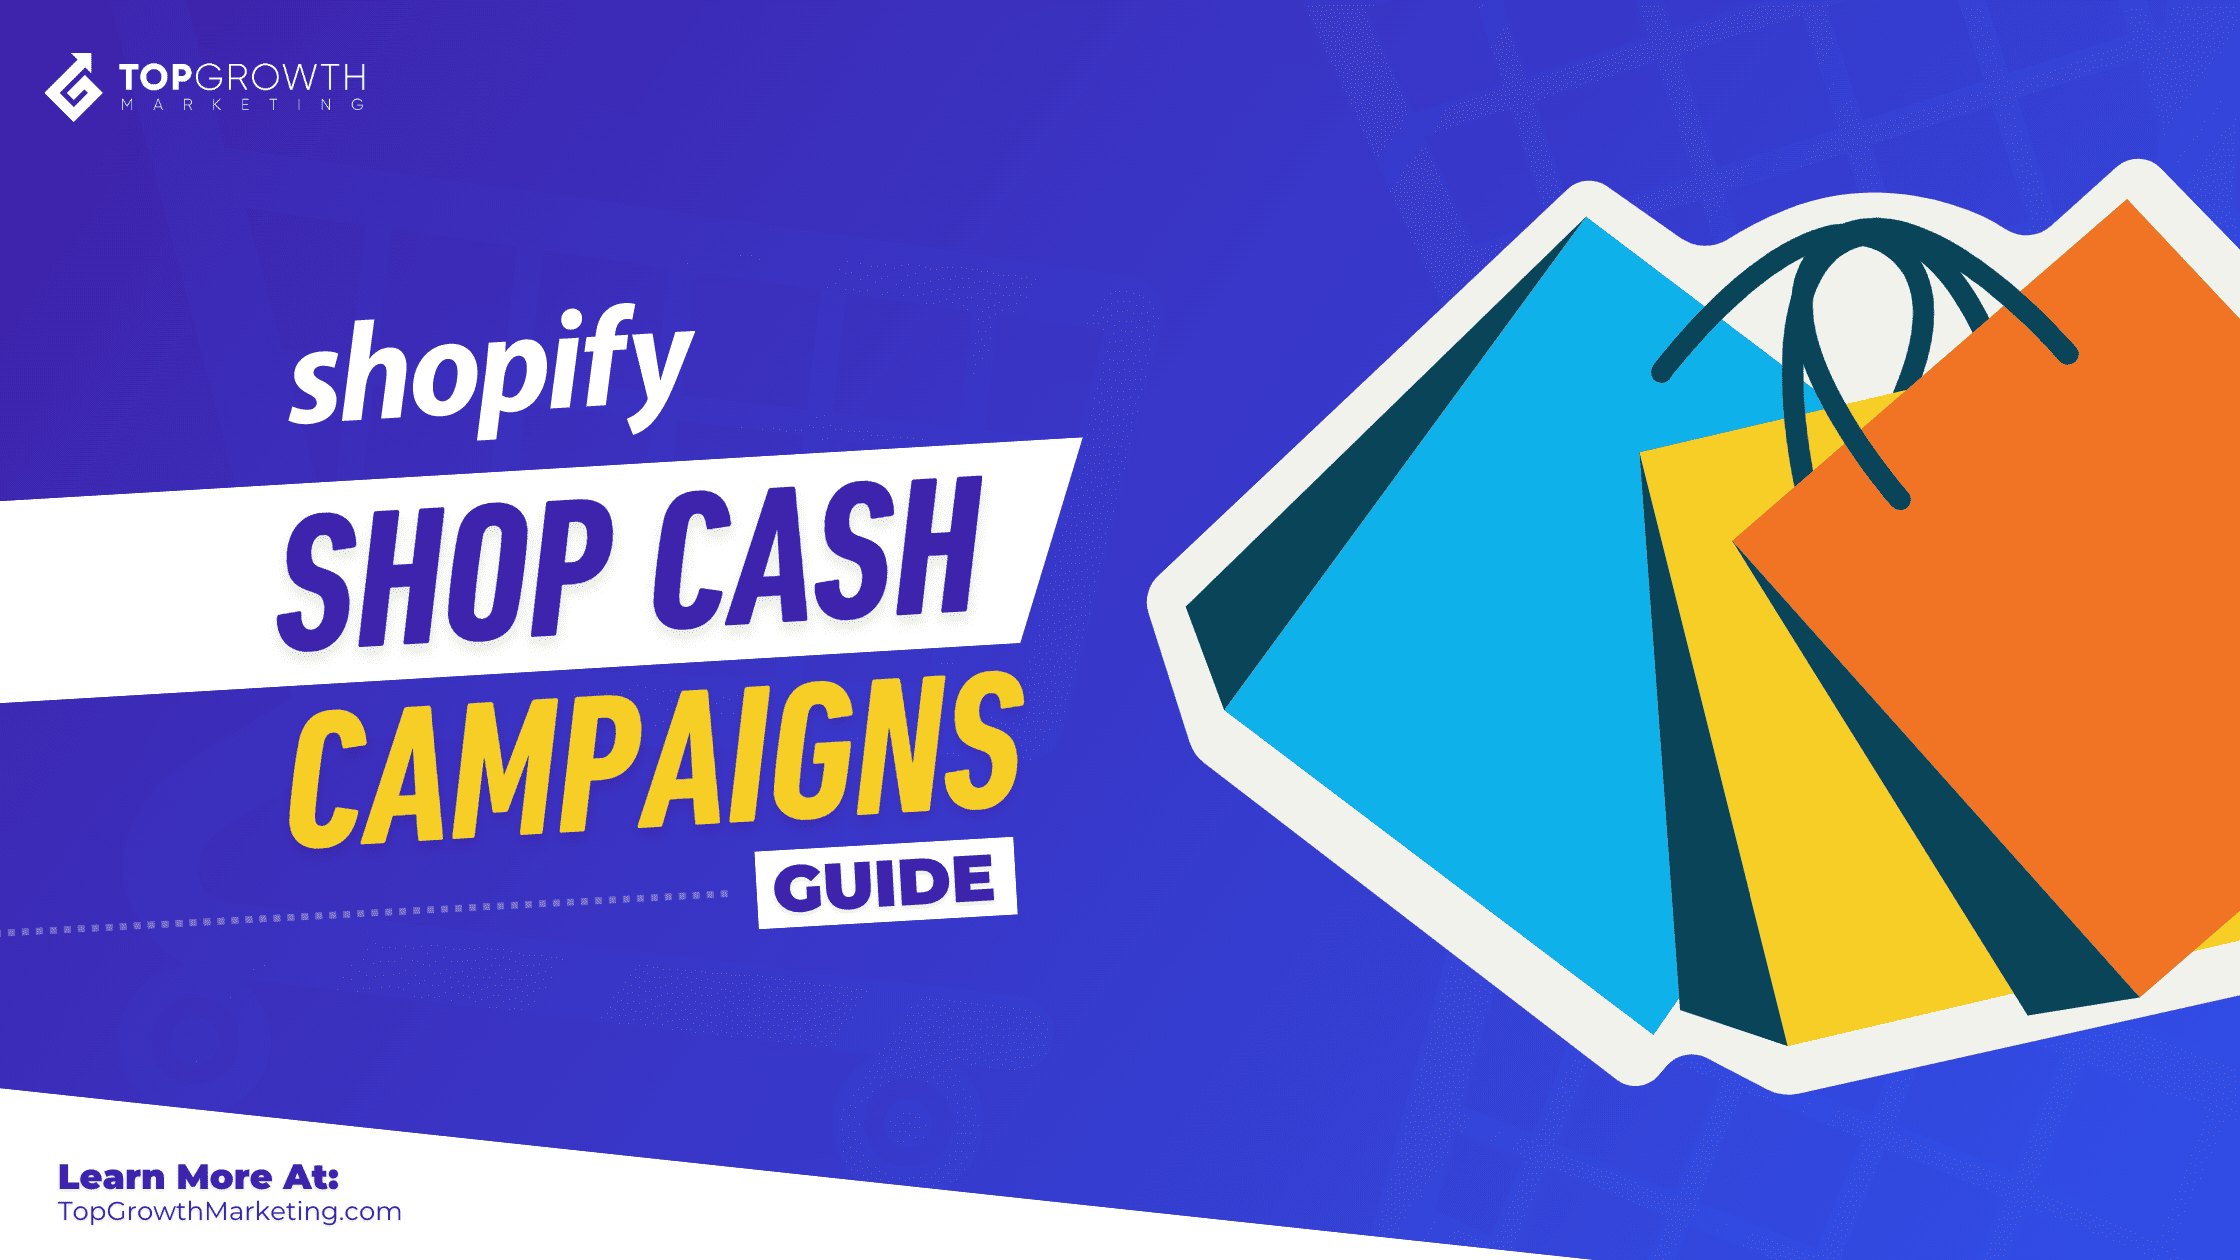 shopify shop cash campaigns guide